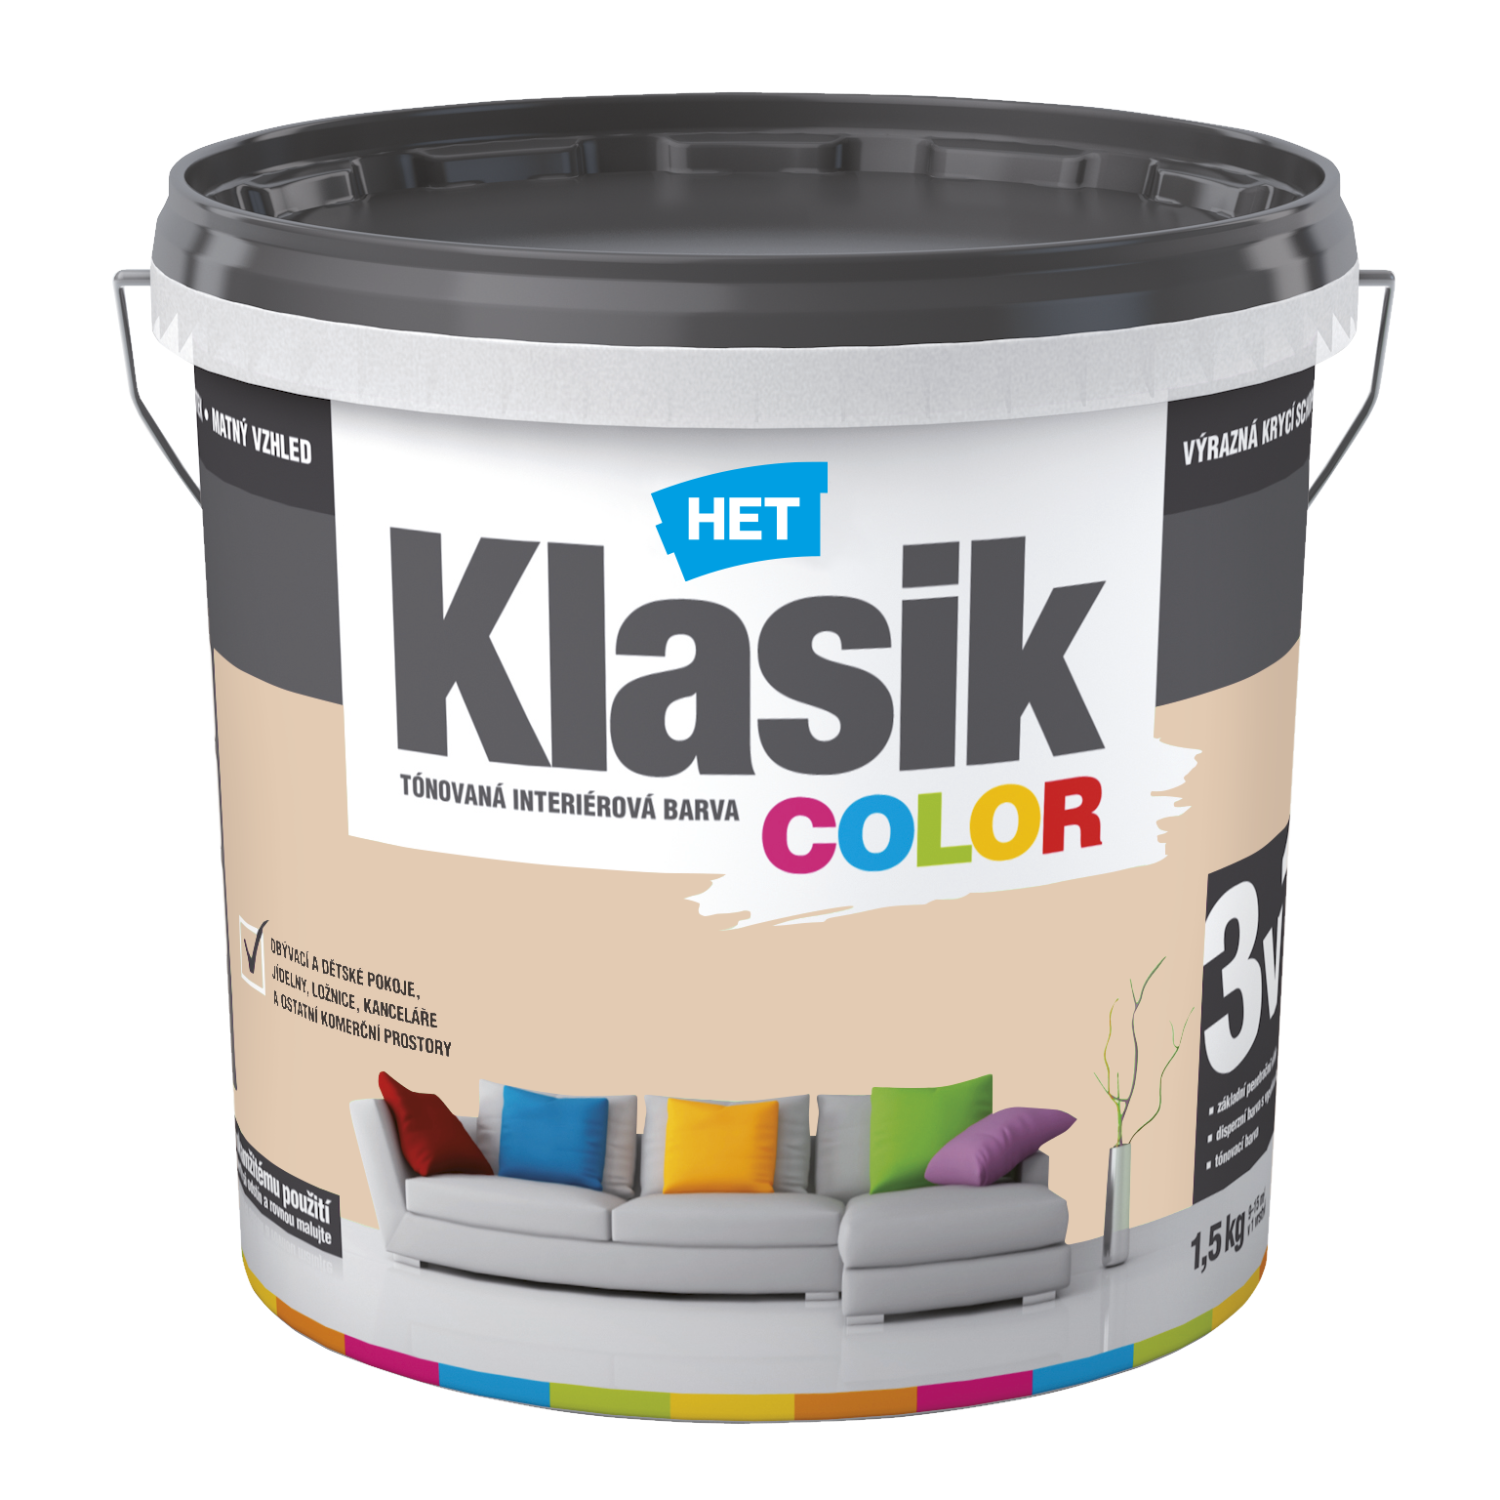 HET Klasik COLOR tónovaná interiérová akrylátová disperzná oteruvzdorná farba 1,5 kg, KC0238 - béžový muškátový